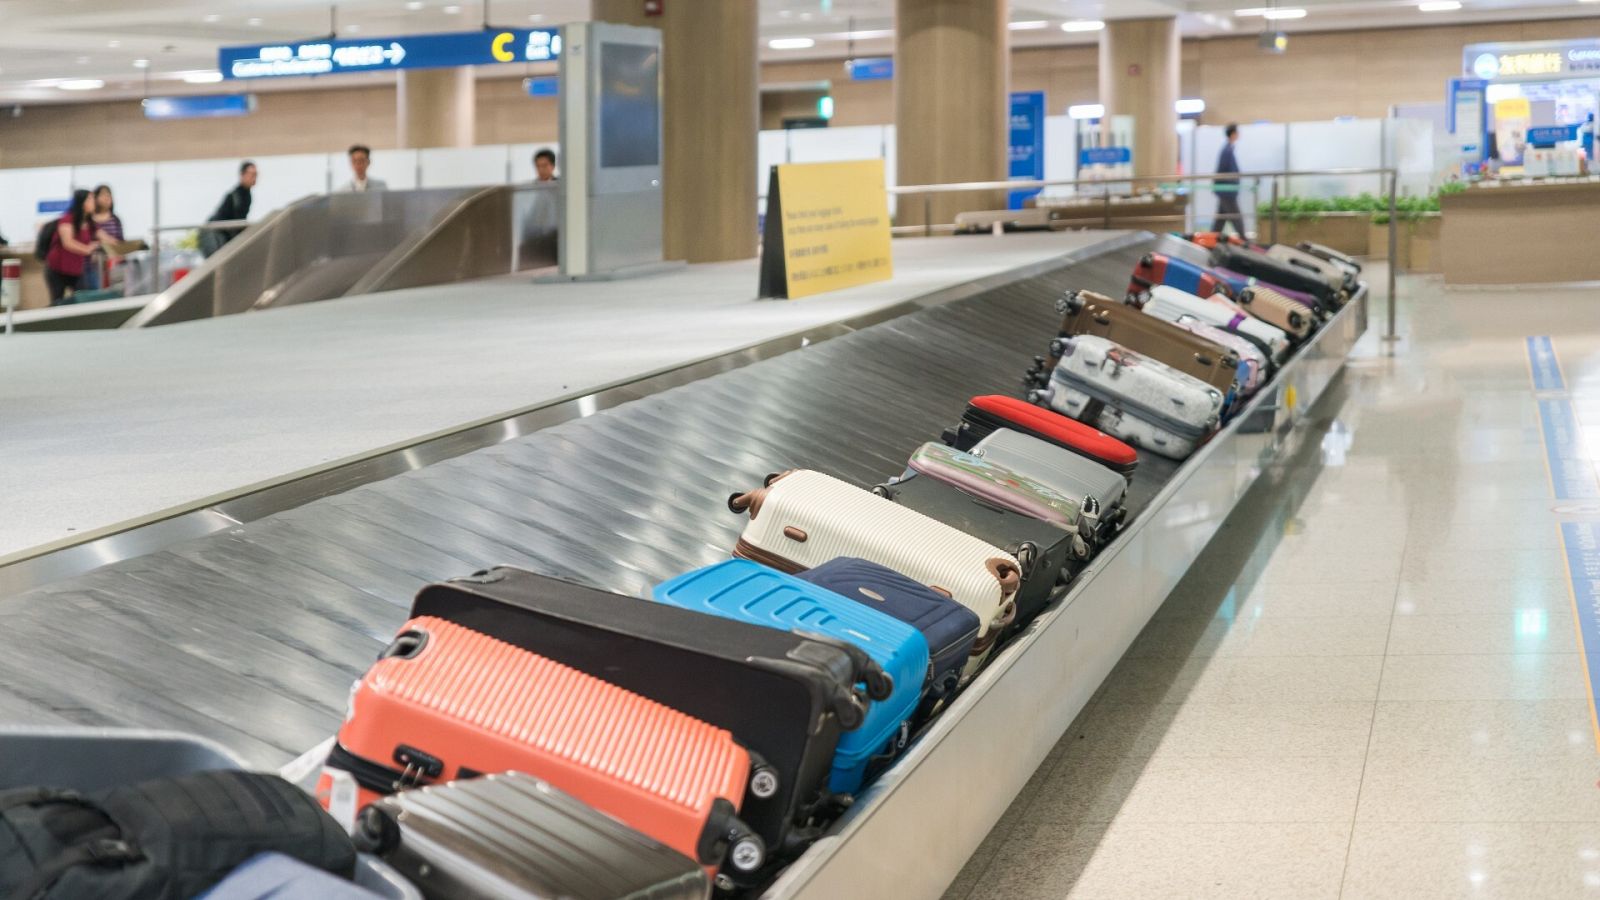 paraguas Hornear Completamente seco Perder las maletas: qué hacer si no llega tu equipaje al aeropuerto